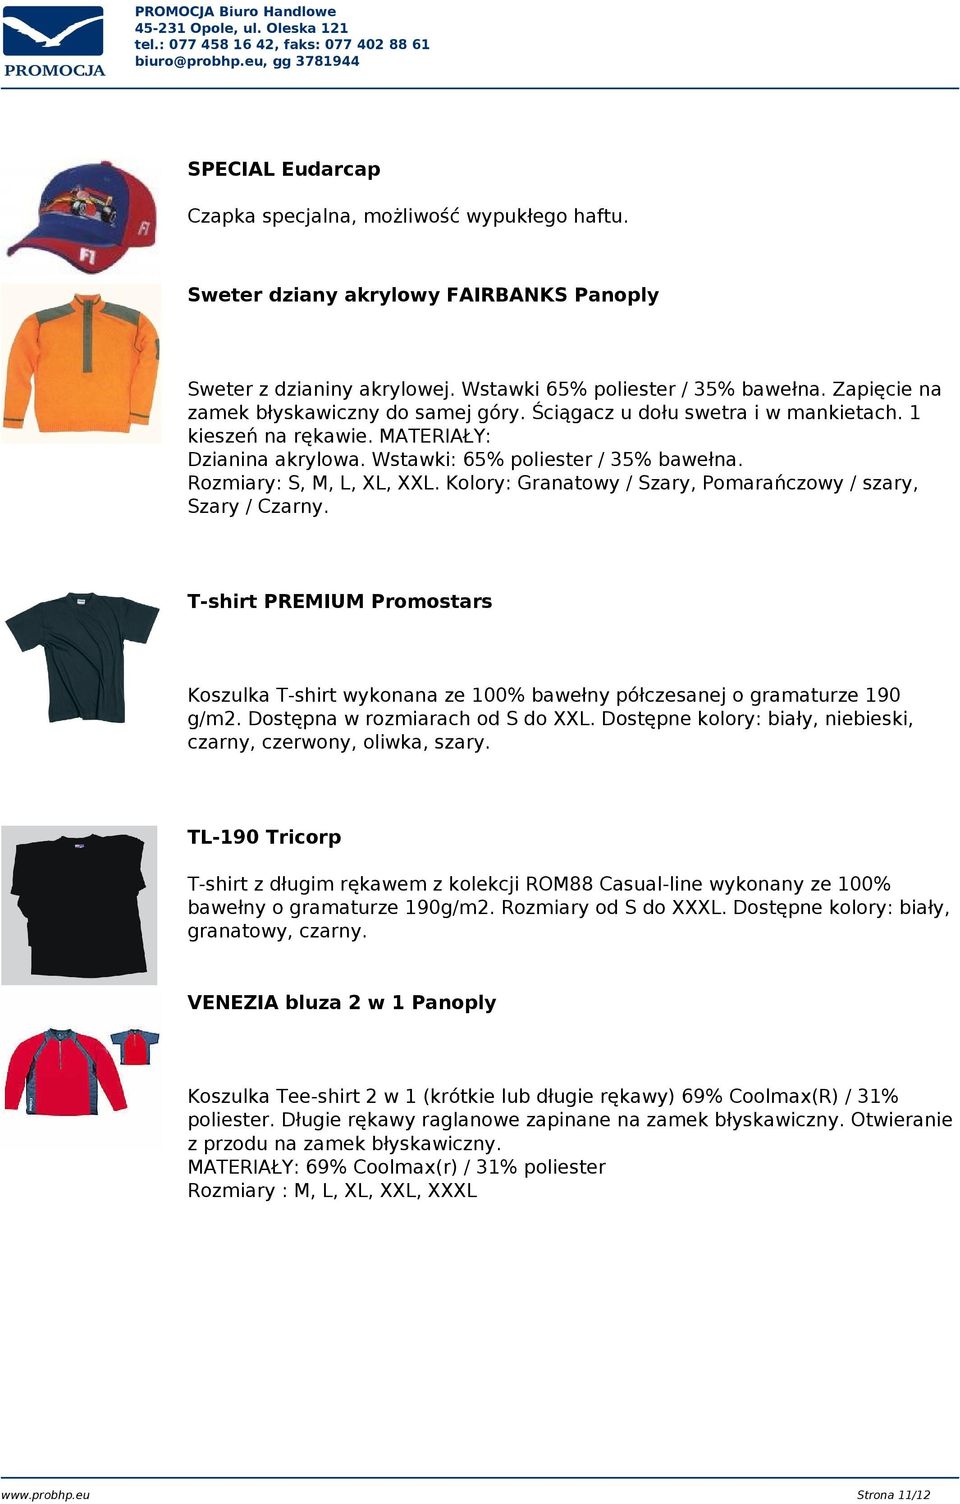 Rozmiary: S, M, L, XL, XXL. Kolory: Granatowy / Szary, Pomarańczowy / szary, Szary / Czarny. T-shirt PREMIUM Promostars Koszulka T-shirt wykonana ze 100% bawełny półczesanej o gramaturze 190 g/m2.